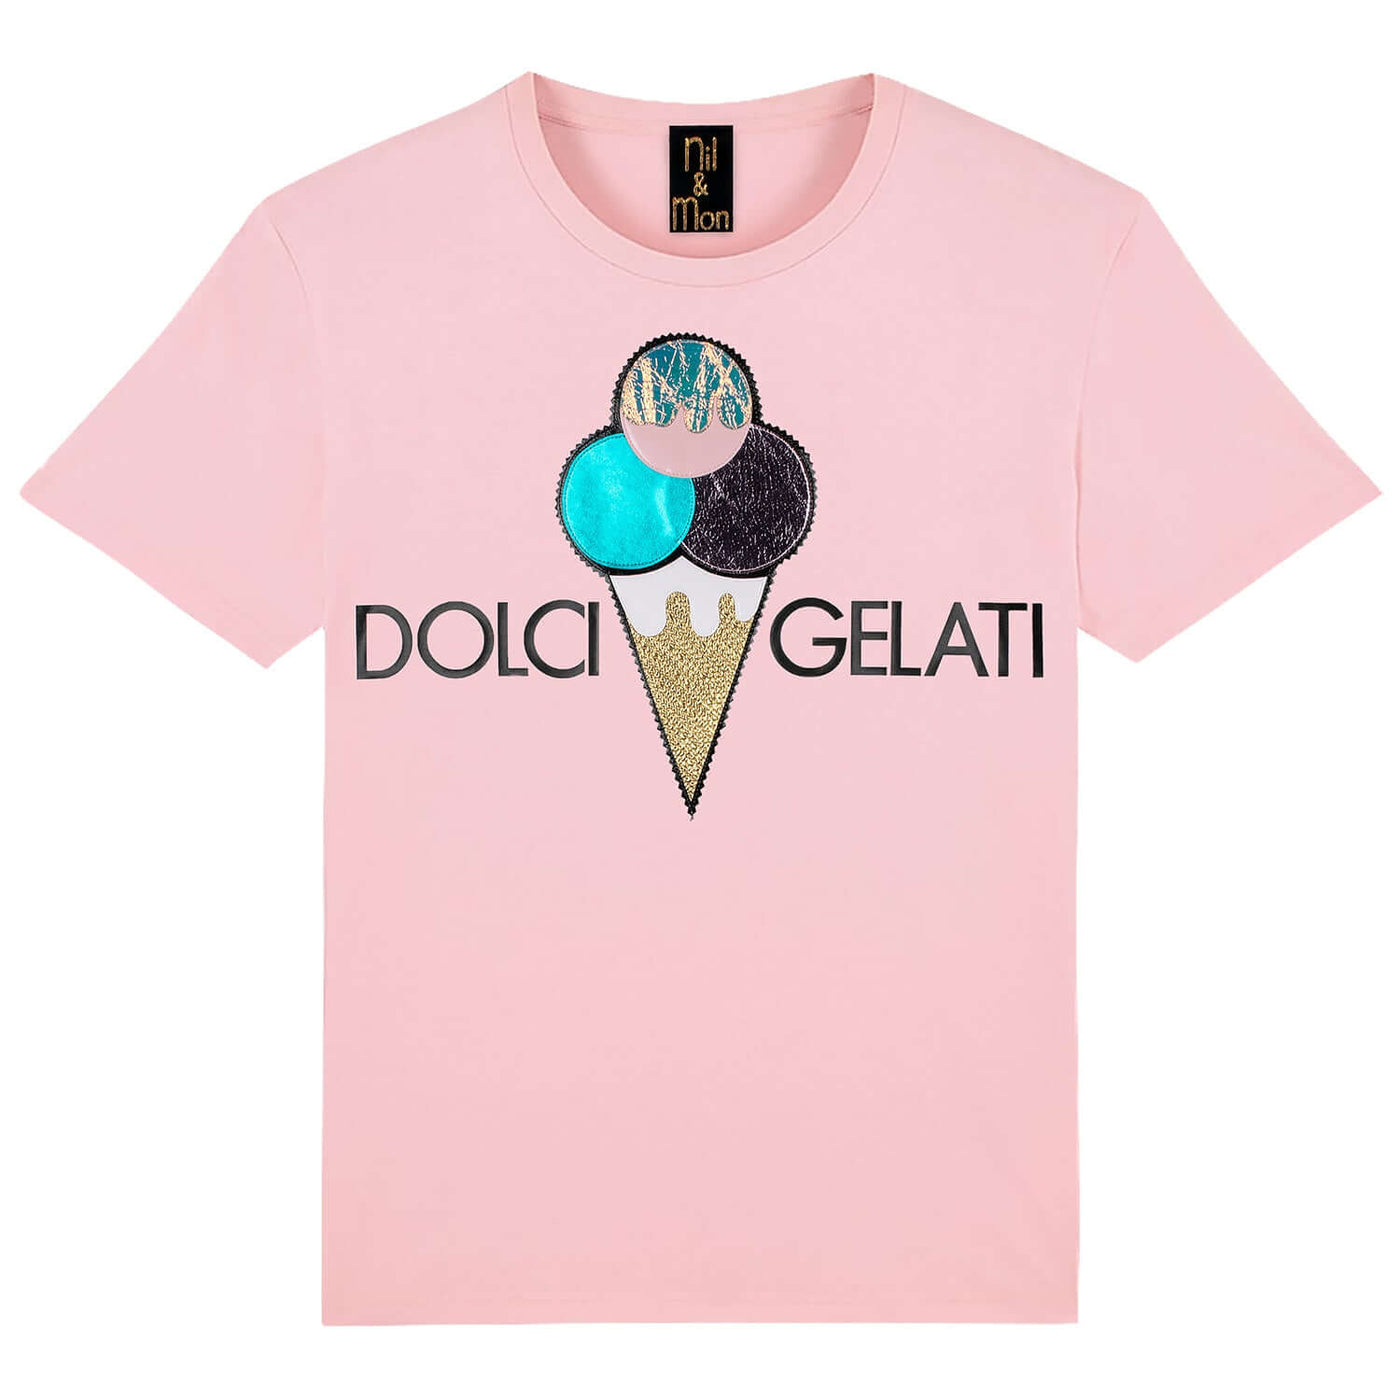 T-Shirt "Dolci Gelati" - light pink